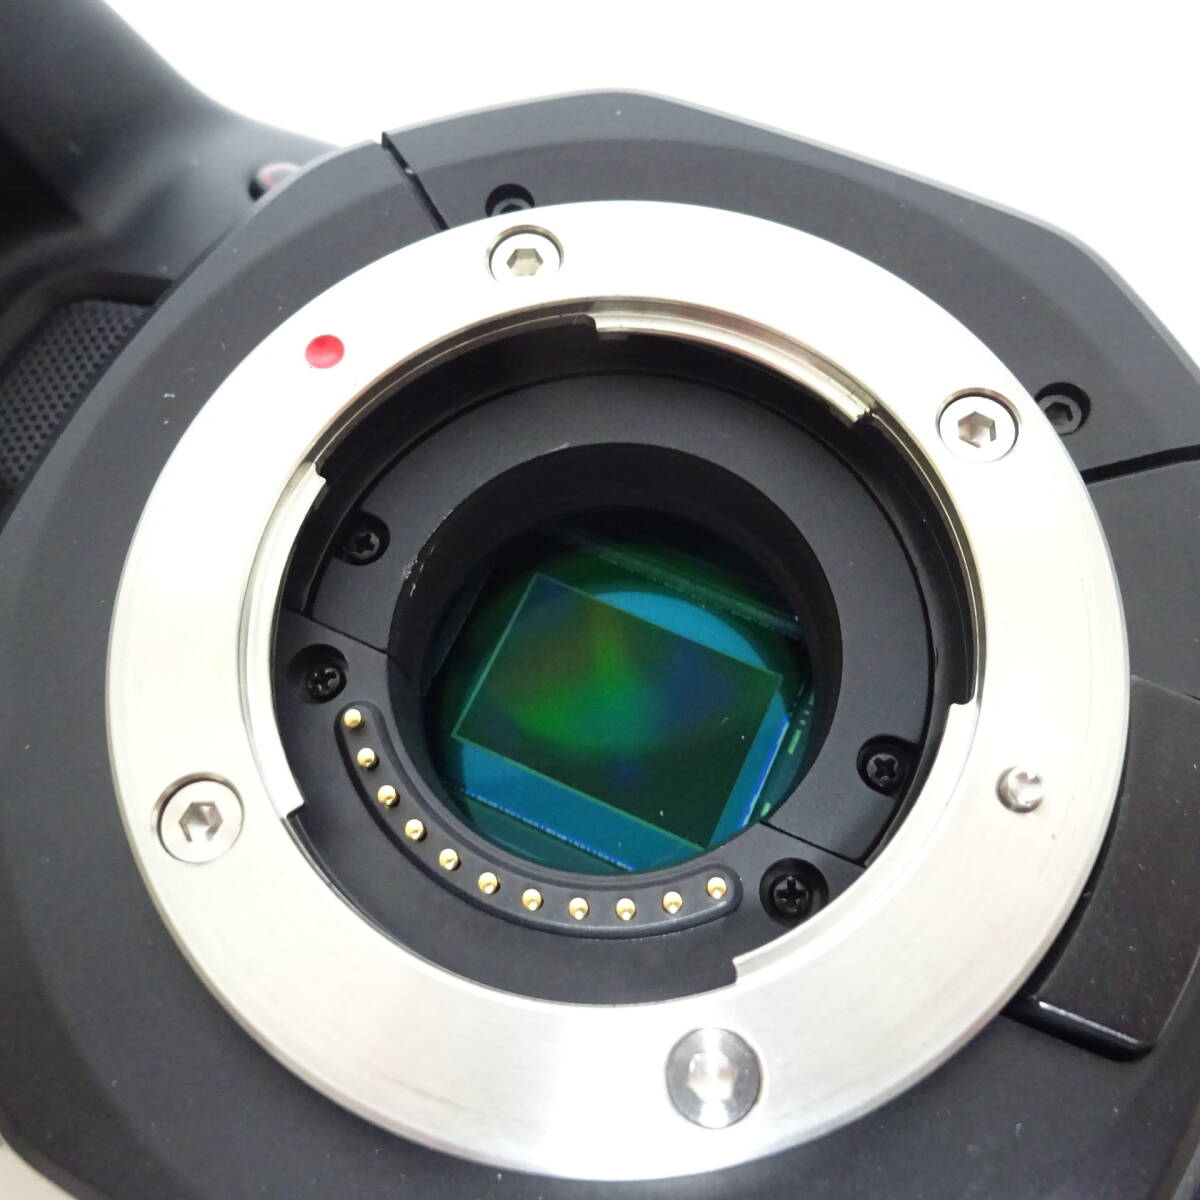  черный Magic дизайн Blackmagic Pocket Cinema Camera 4k работоспособность не проверялась [80 размер / включение в покупку не возможно / Osaka товар ][2546798/283/mrrz]